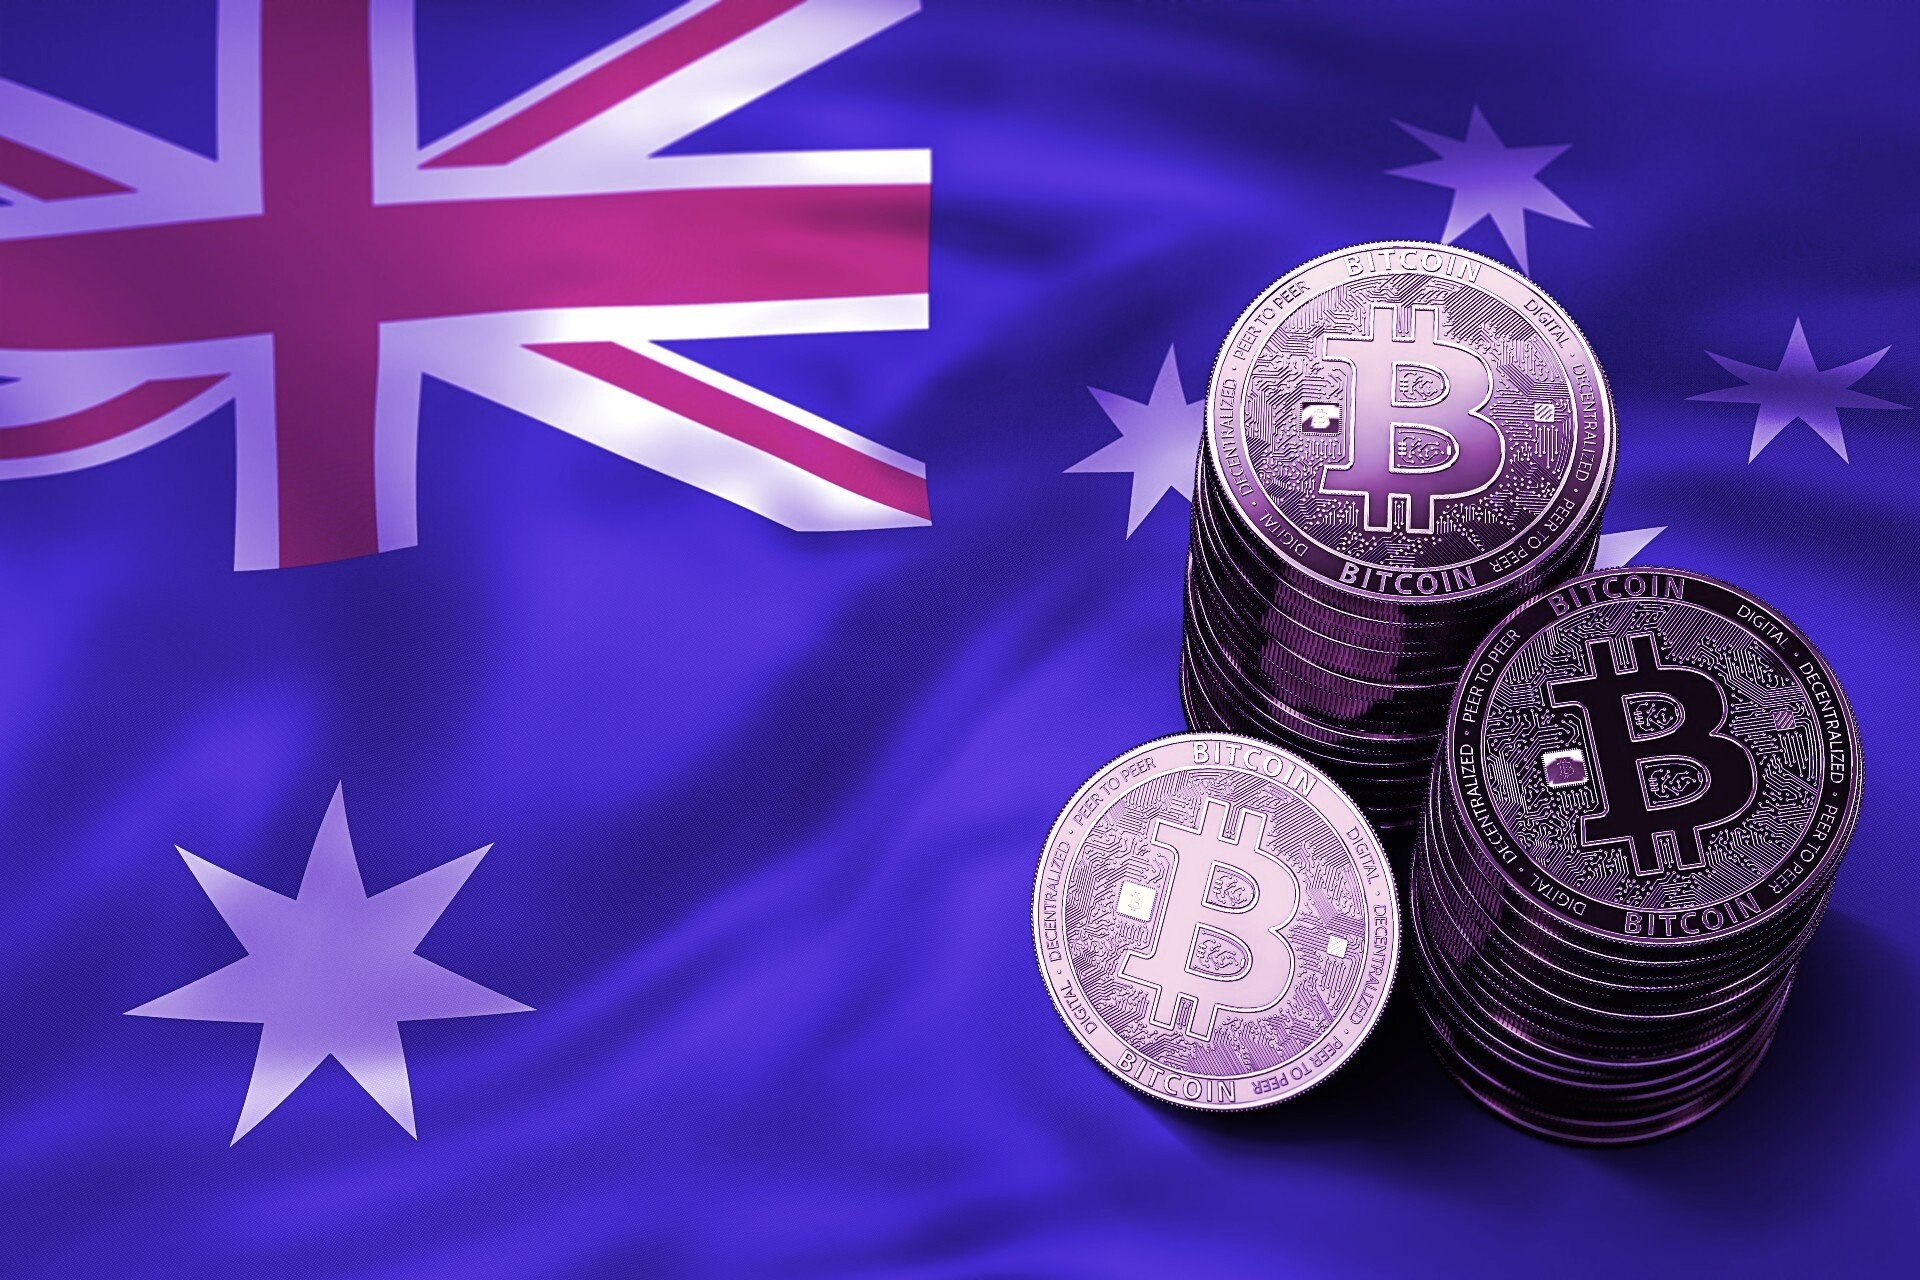 Avustralya'dan Finder Wallet’a dava